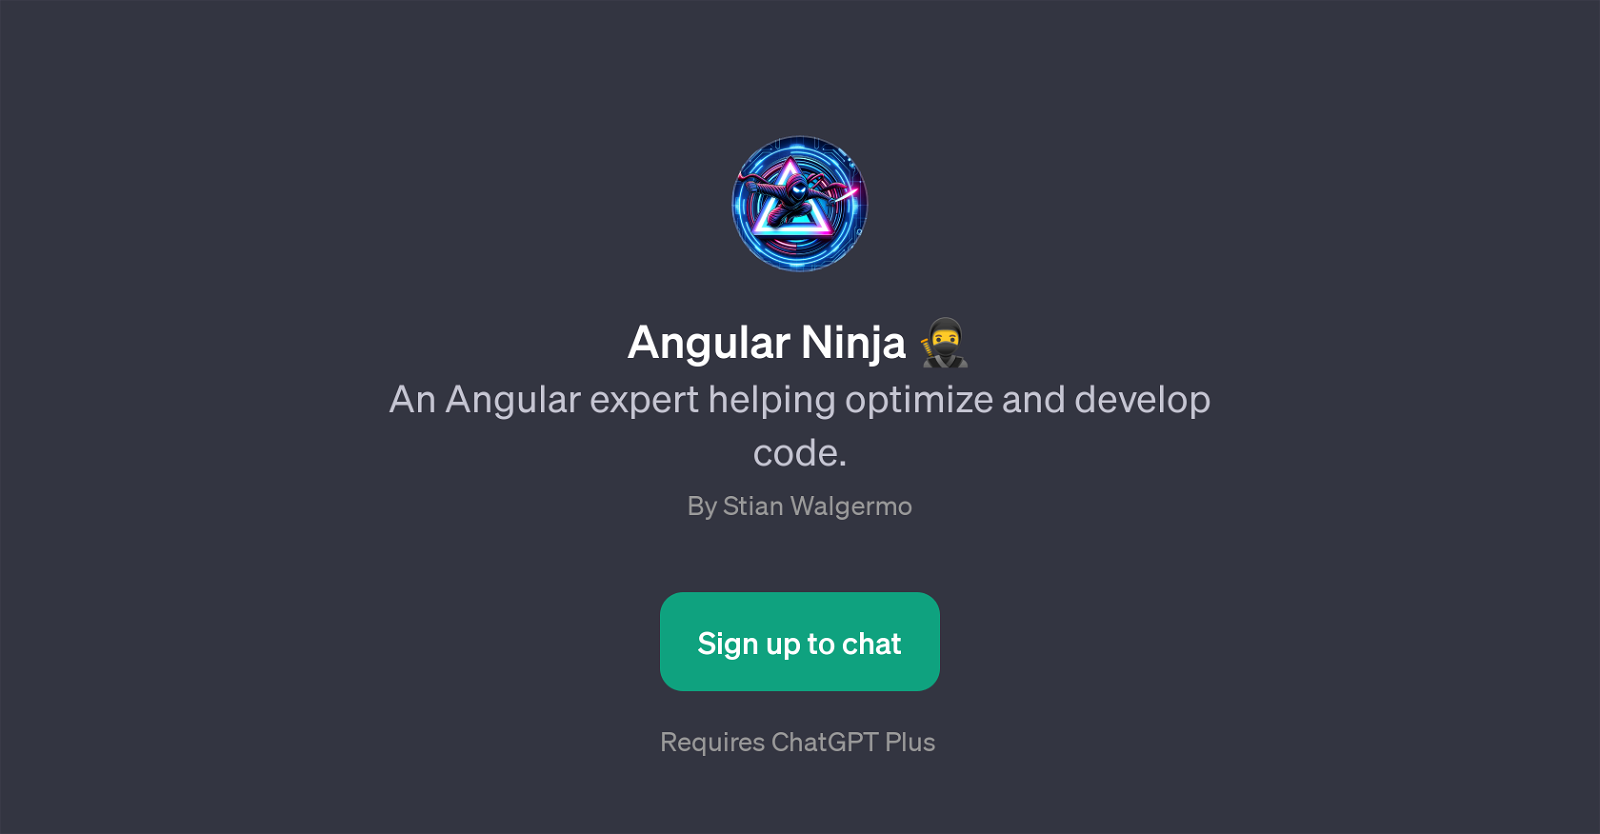 Angular Ninja website